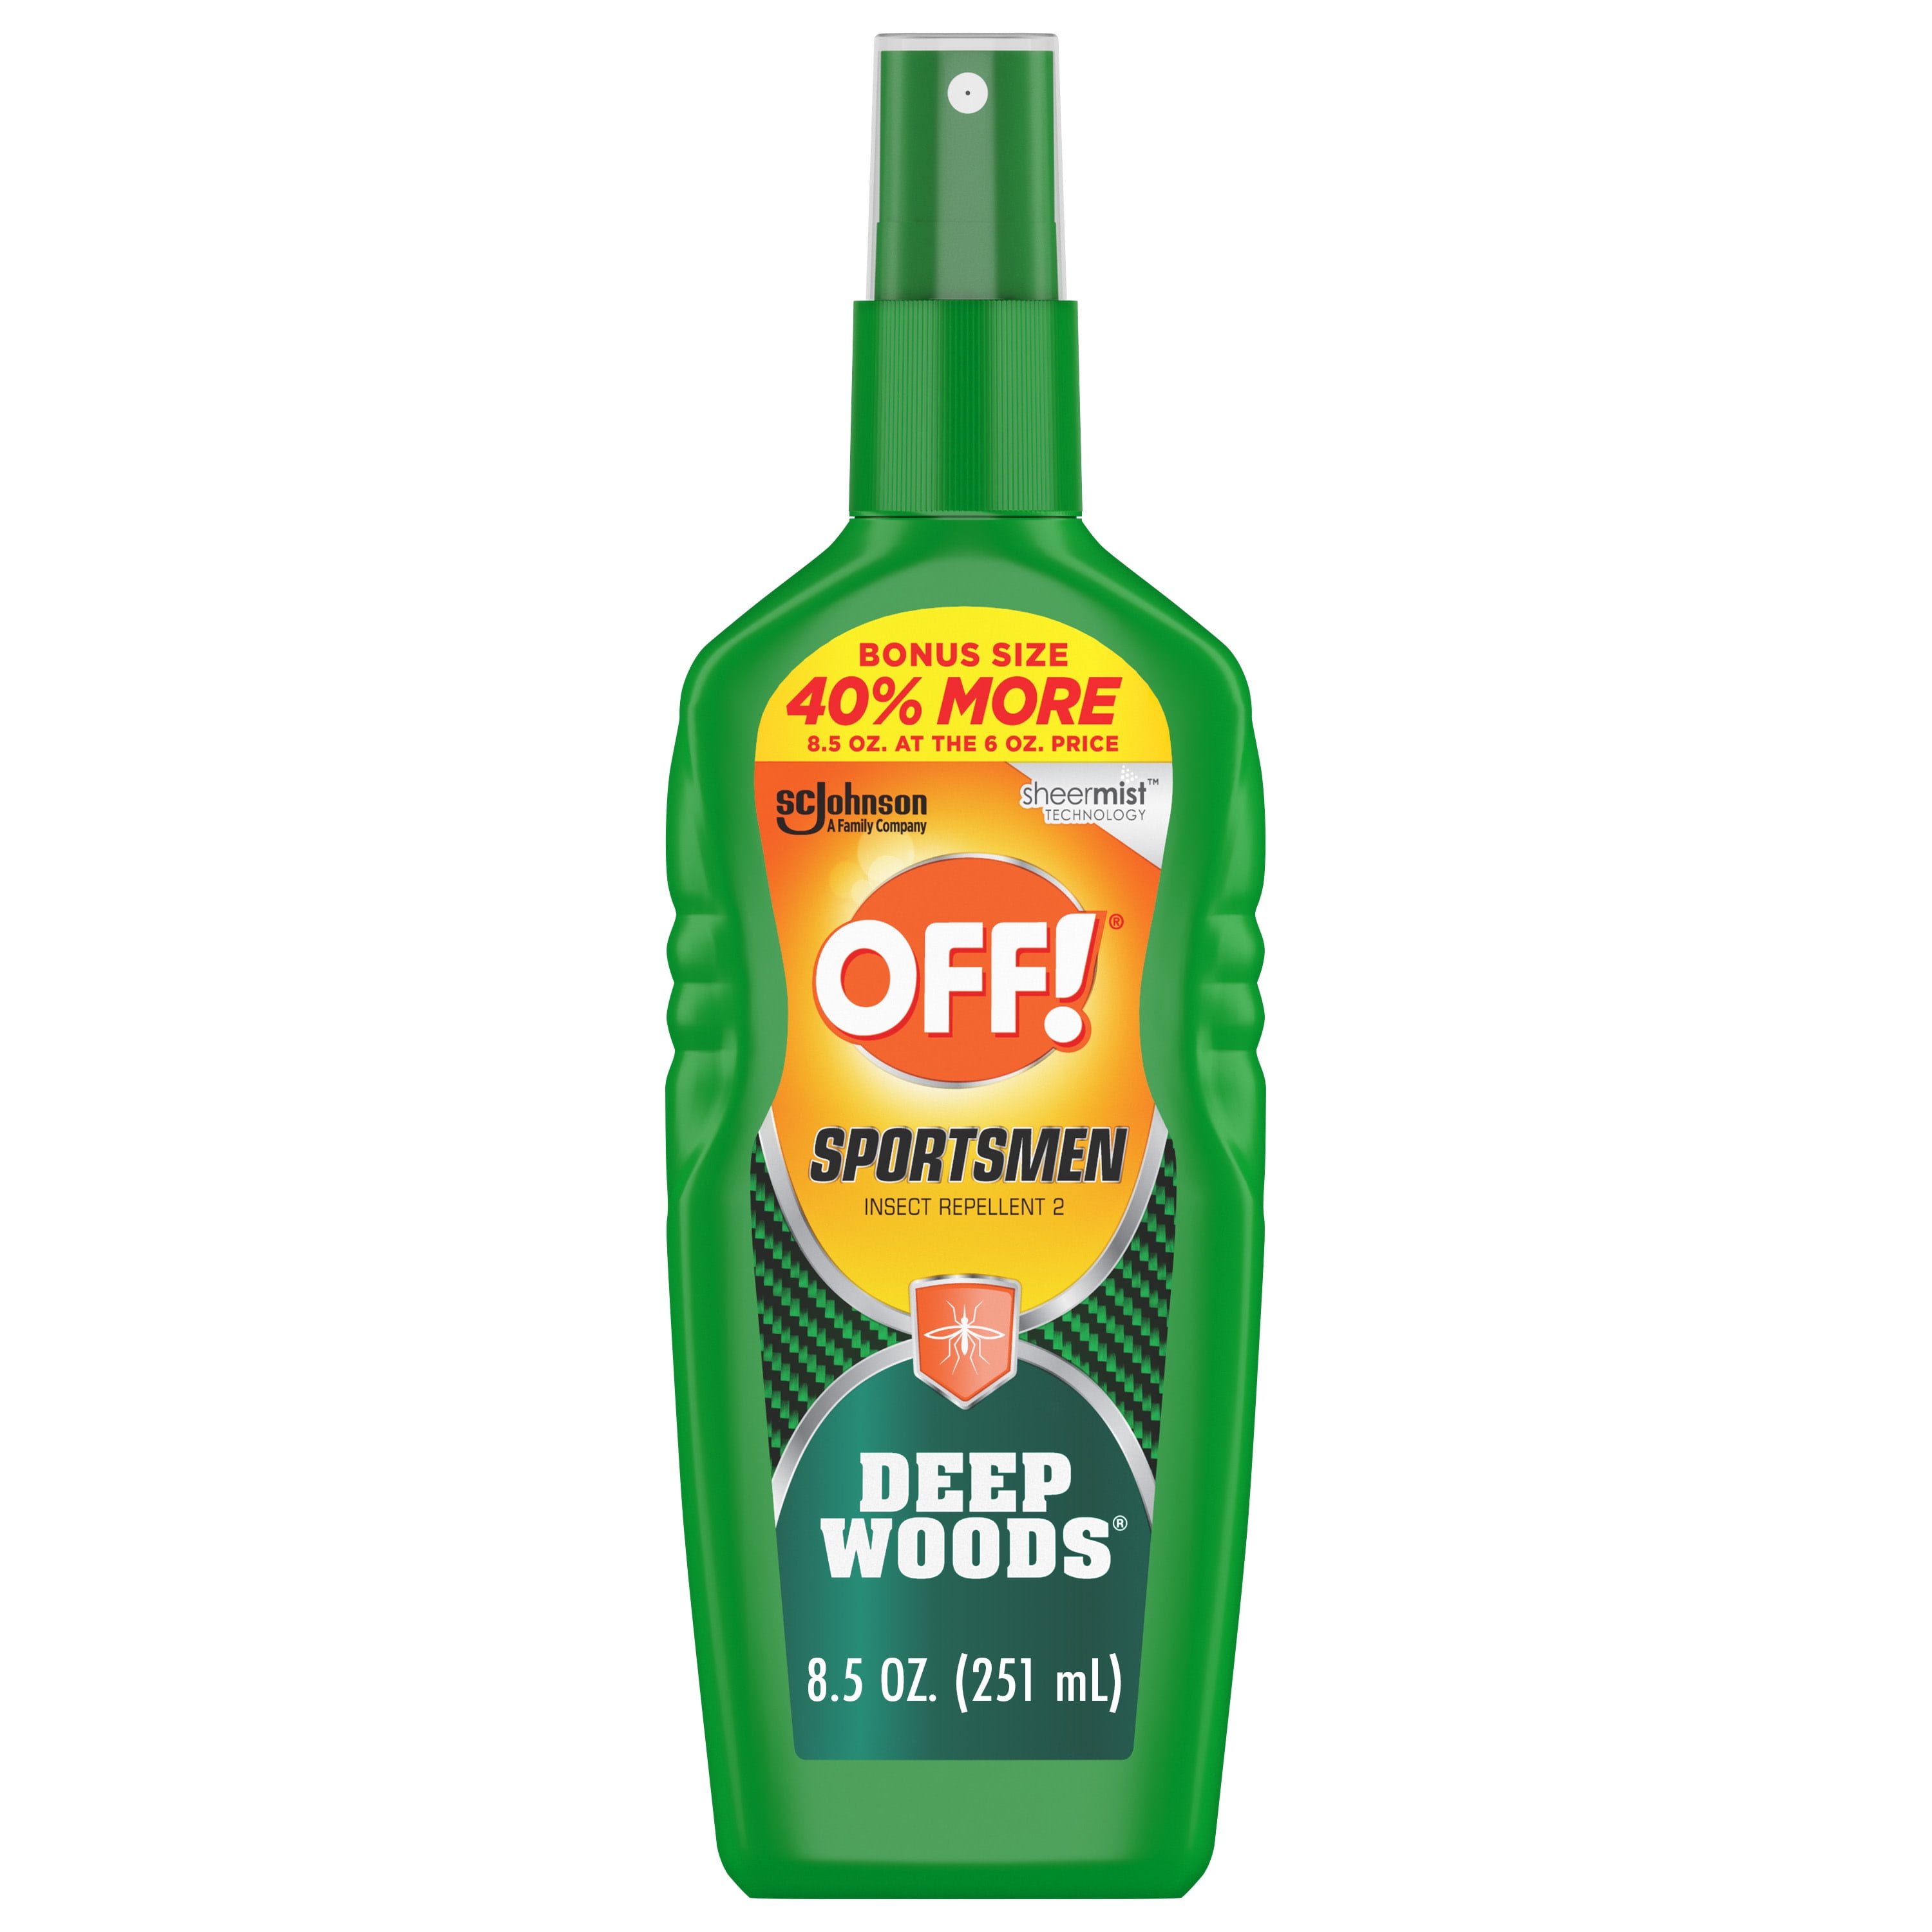 OFF! Sportsmen Deep Woods Insect Repellent II Spritz, Bonus Size, 8.5 Oz